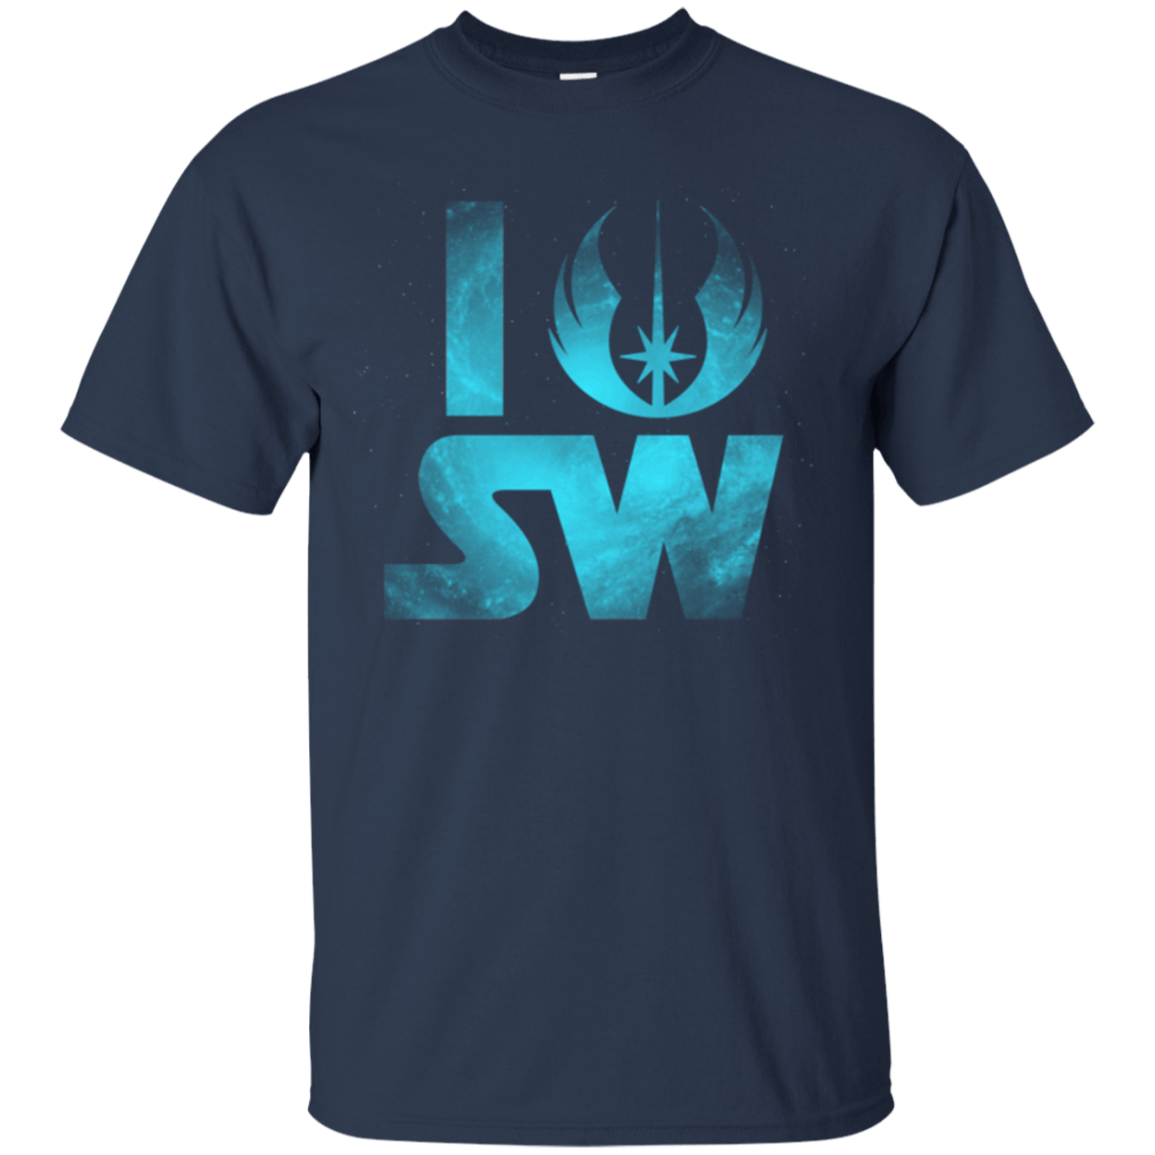 T-Shirts Navy / Small I Jedi SW T-Shirt